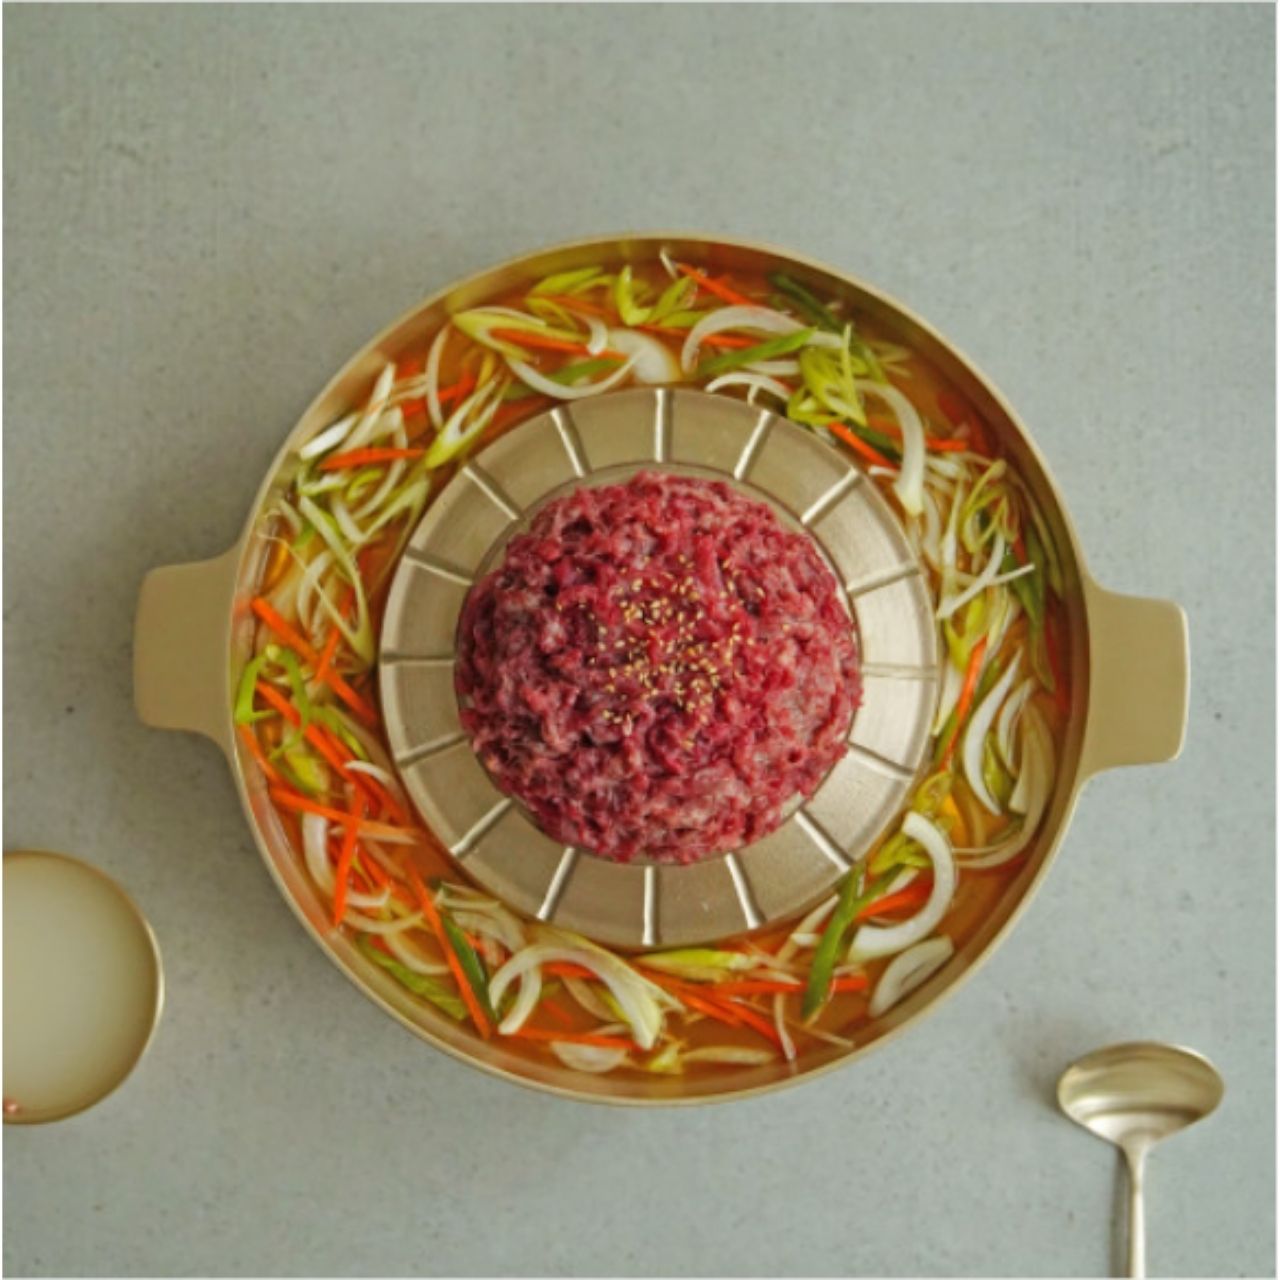 *NotDam* 韓國傳統黃銅鍮器烤盤(煎鍋) 邊鍋適用於涮涮鍋_30cm